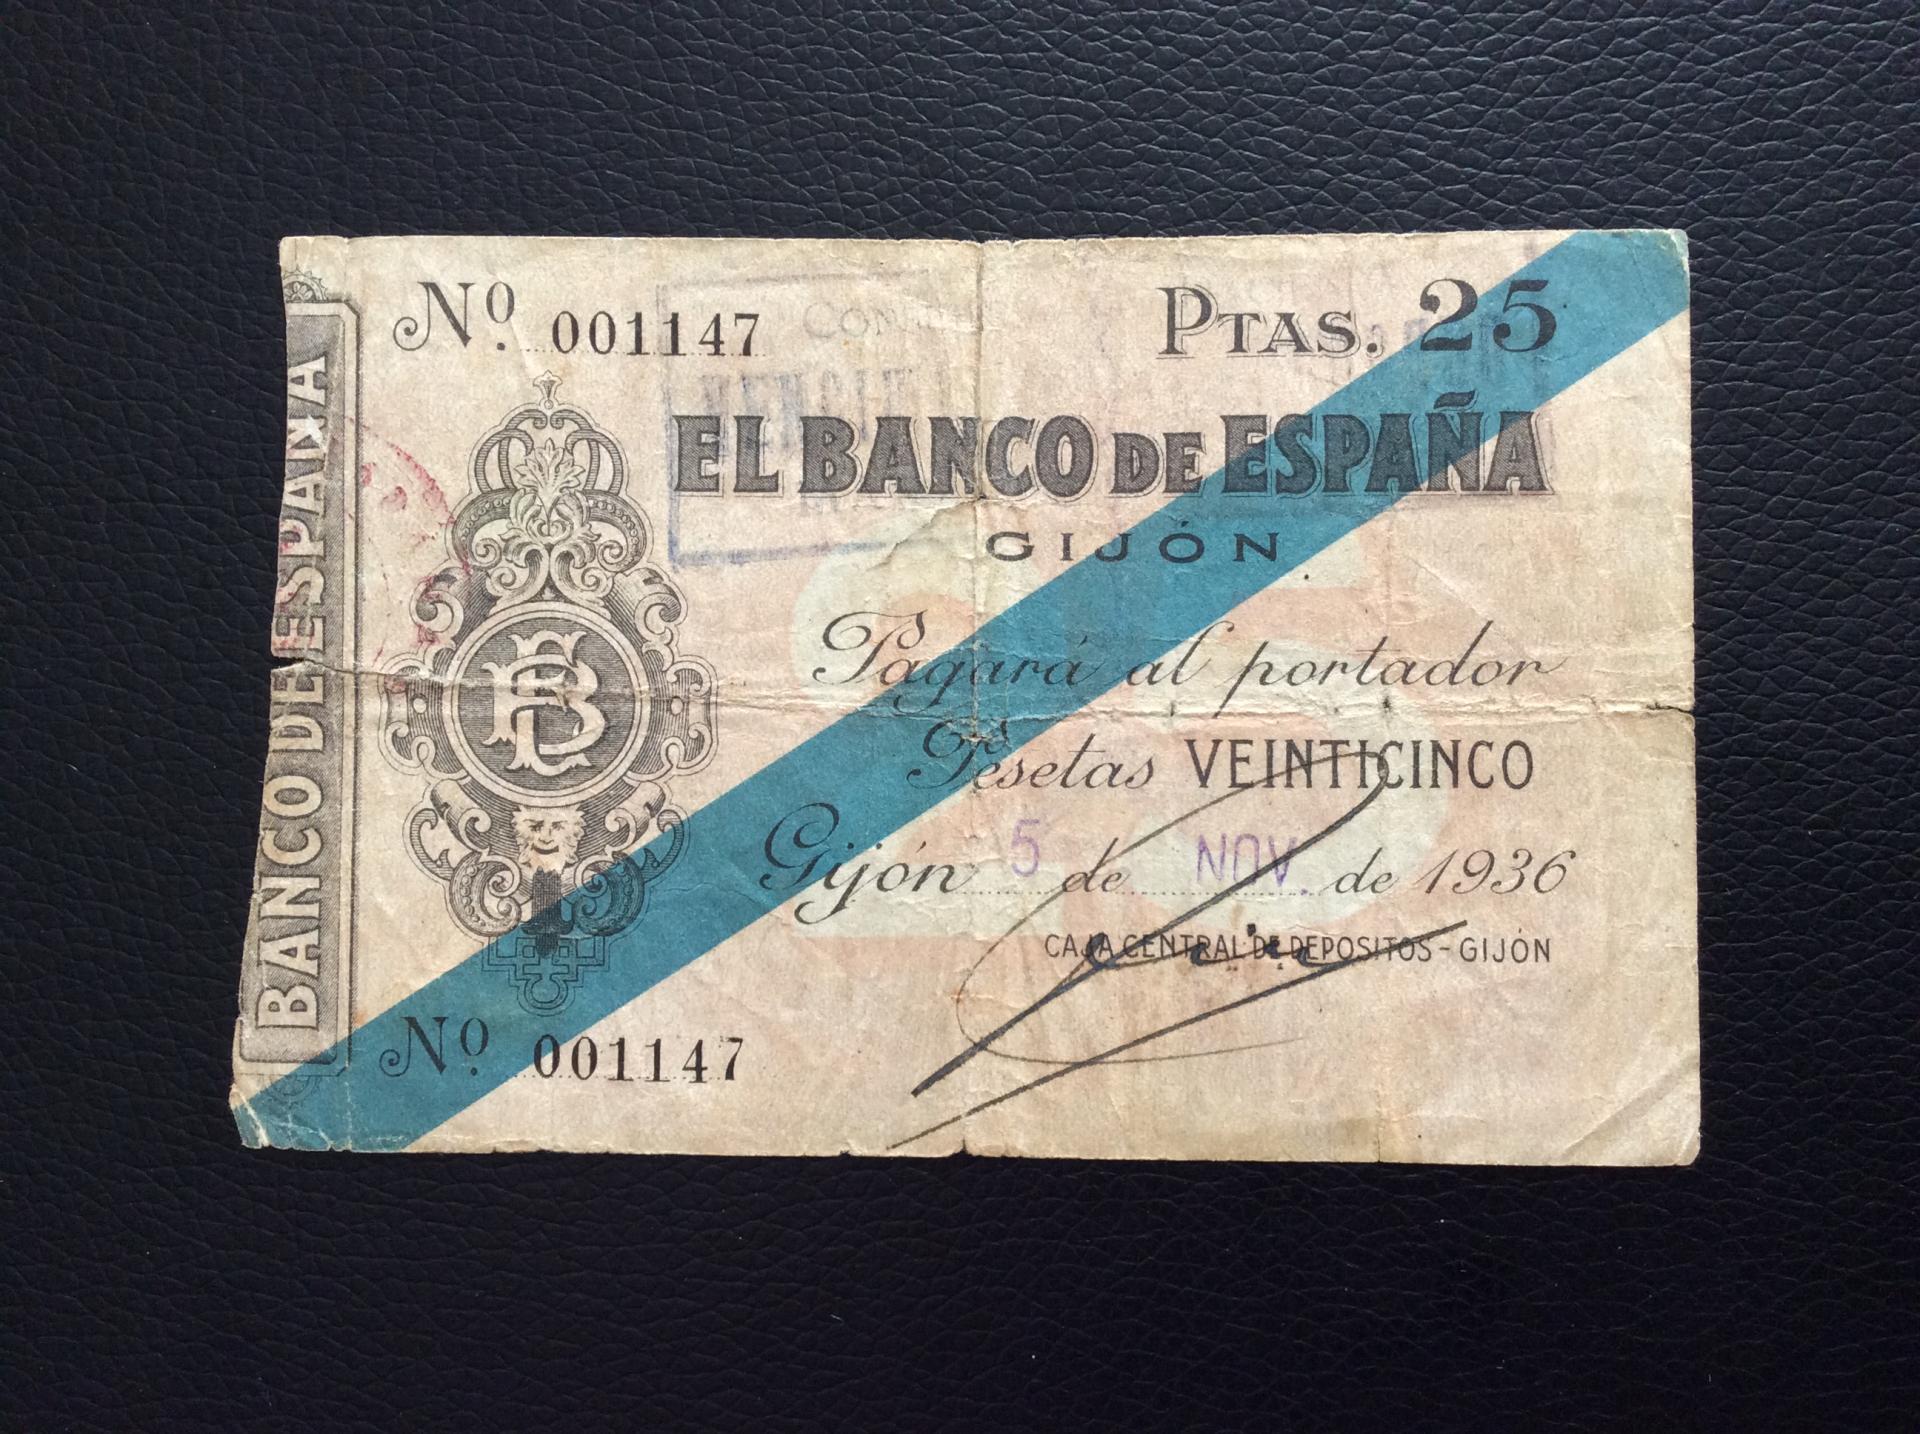 25 PESETAS 1936 - BANCO DE ESPAÑA GIJÓN 